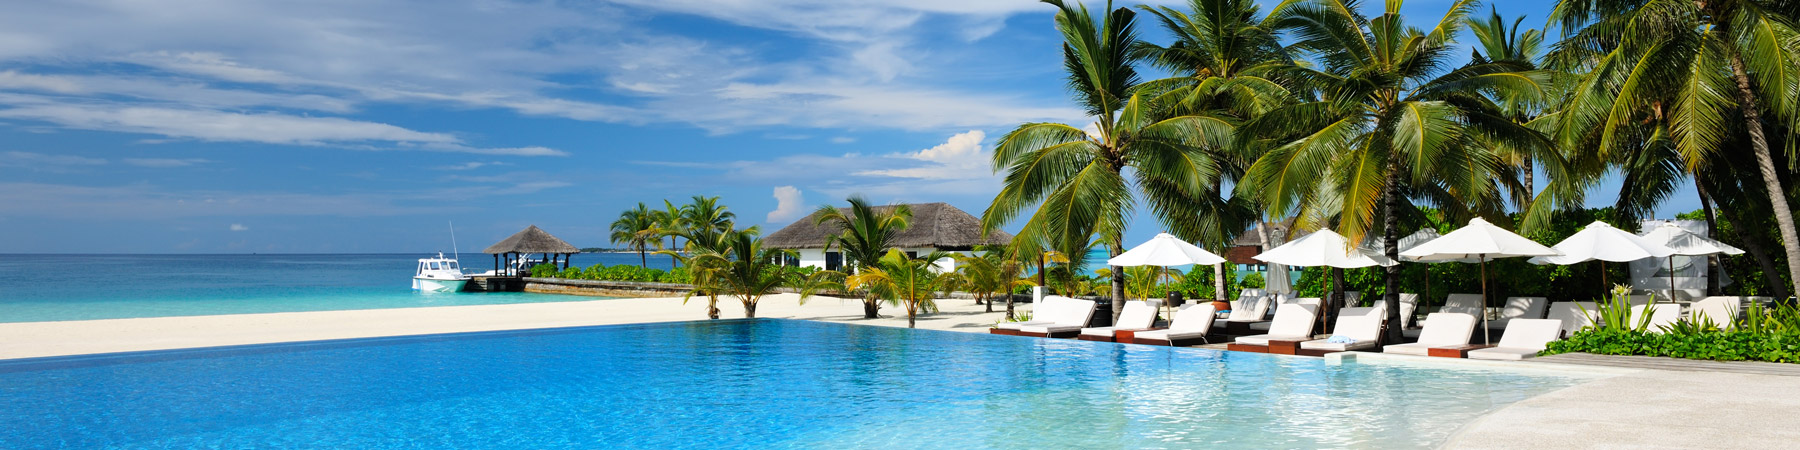 Barbados Resort Villas Villa Collection